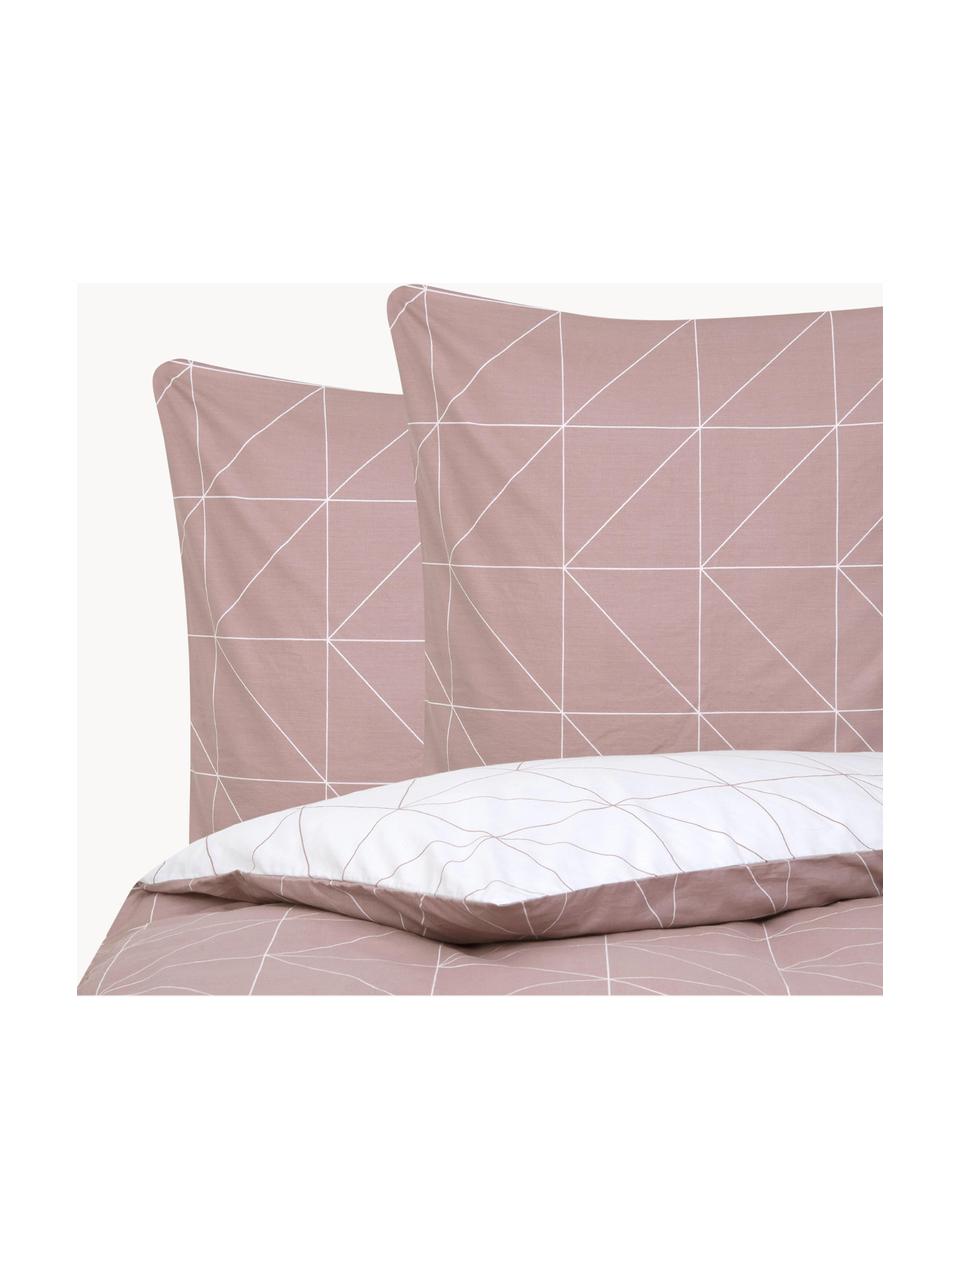 Biancheria da letto reversibile in cotone ranforce Marla, Malva & bianco, fantasia, 255 x 200 cm, 3 pz